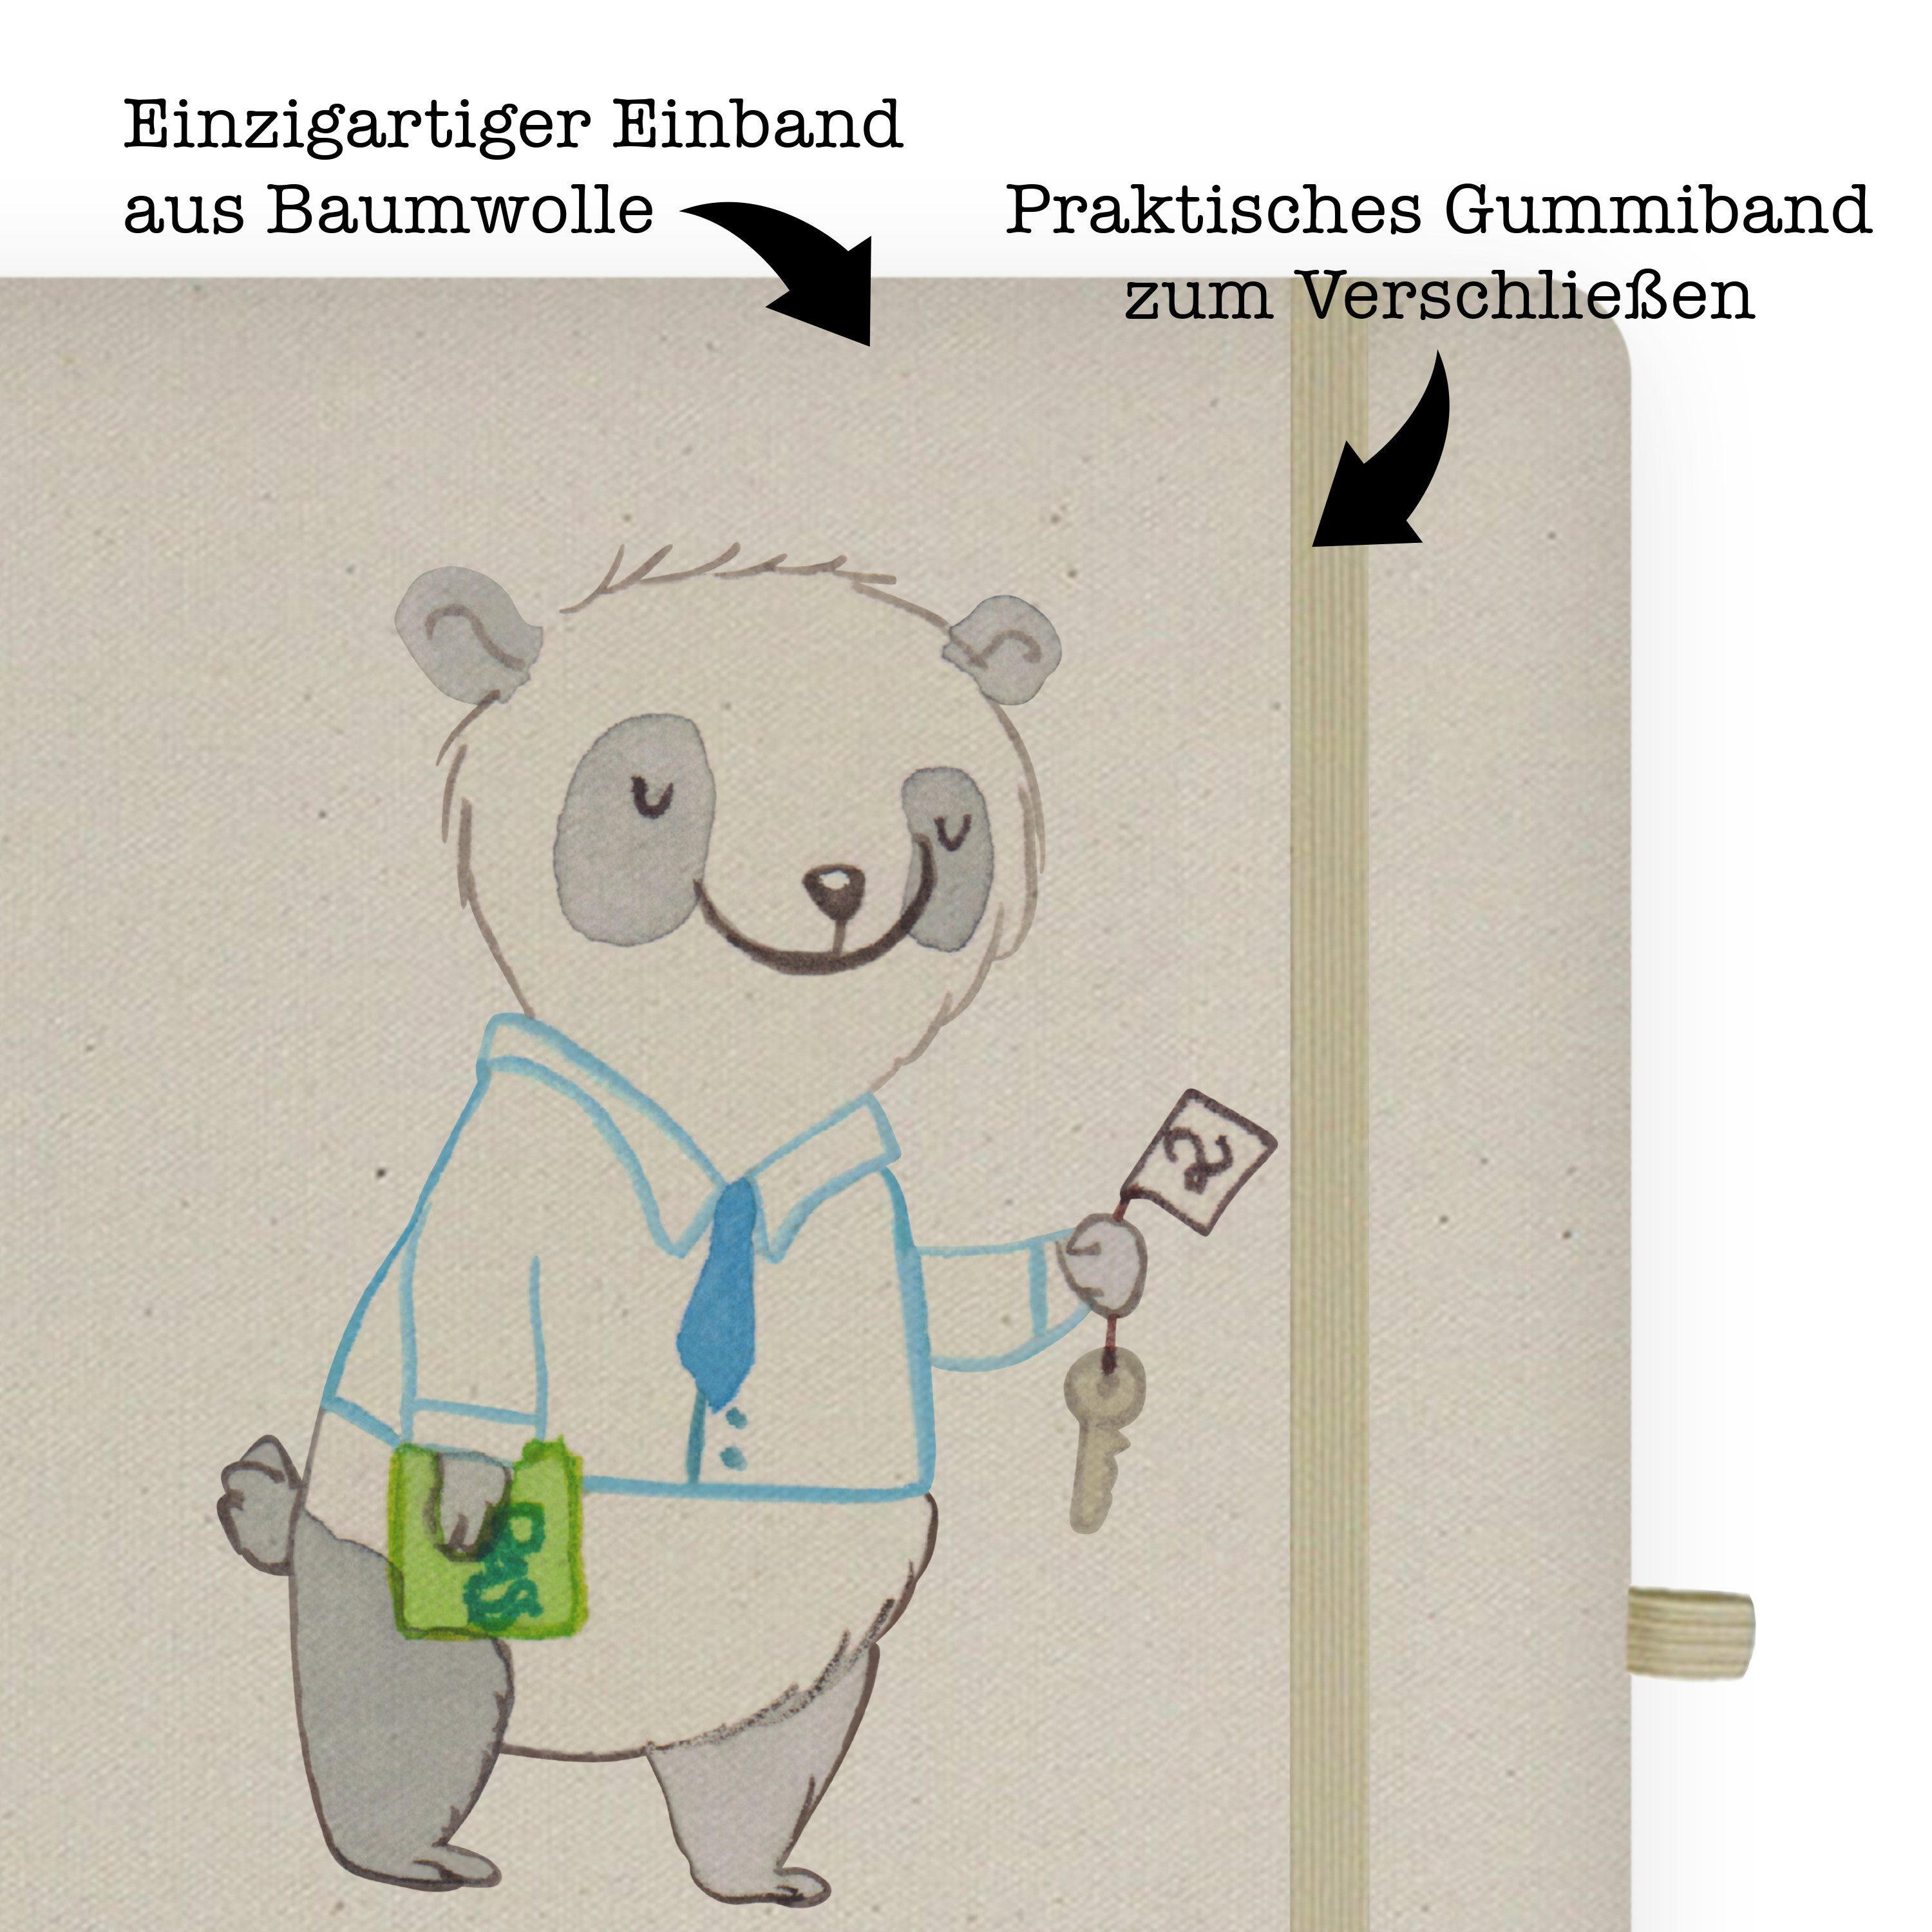 Transparent Panda Mr. Mr. & mit Panda Mrs. Hotelkaufmann - Herz Geschenk, & - Notizbuch Mrs. Schreibheft, Schenke